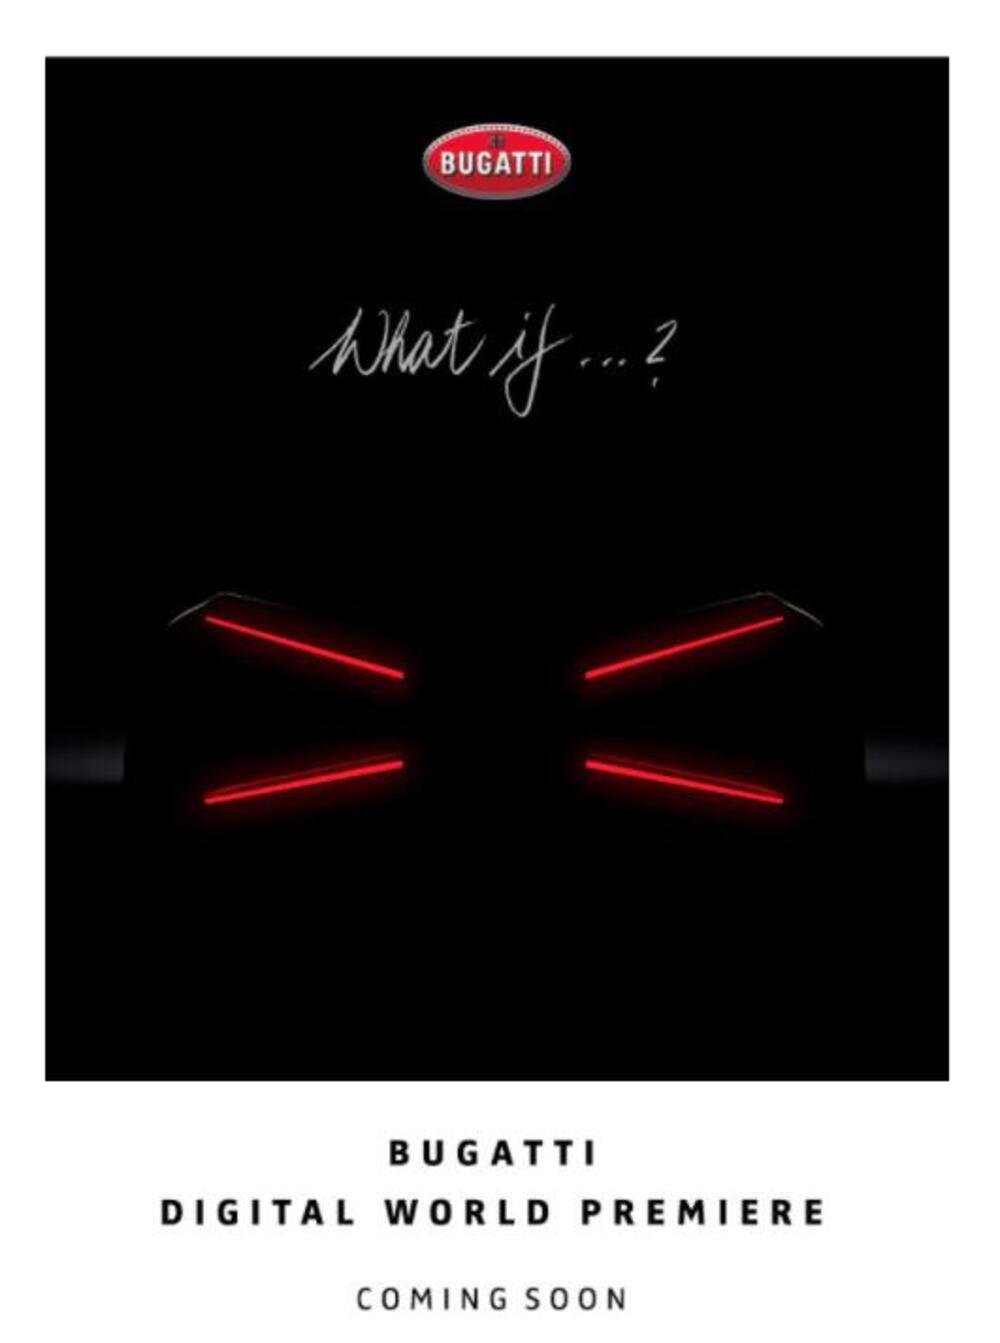 La comunicazione della Bugatti giunta in redazione